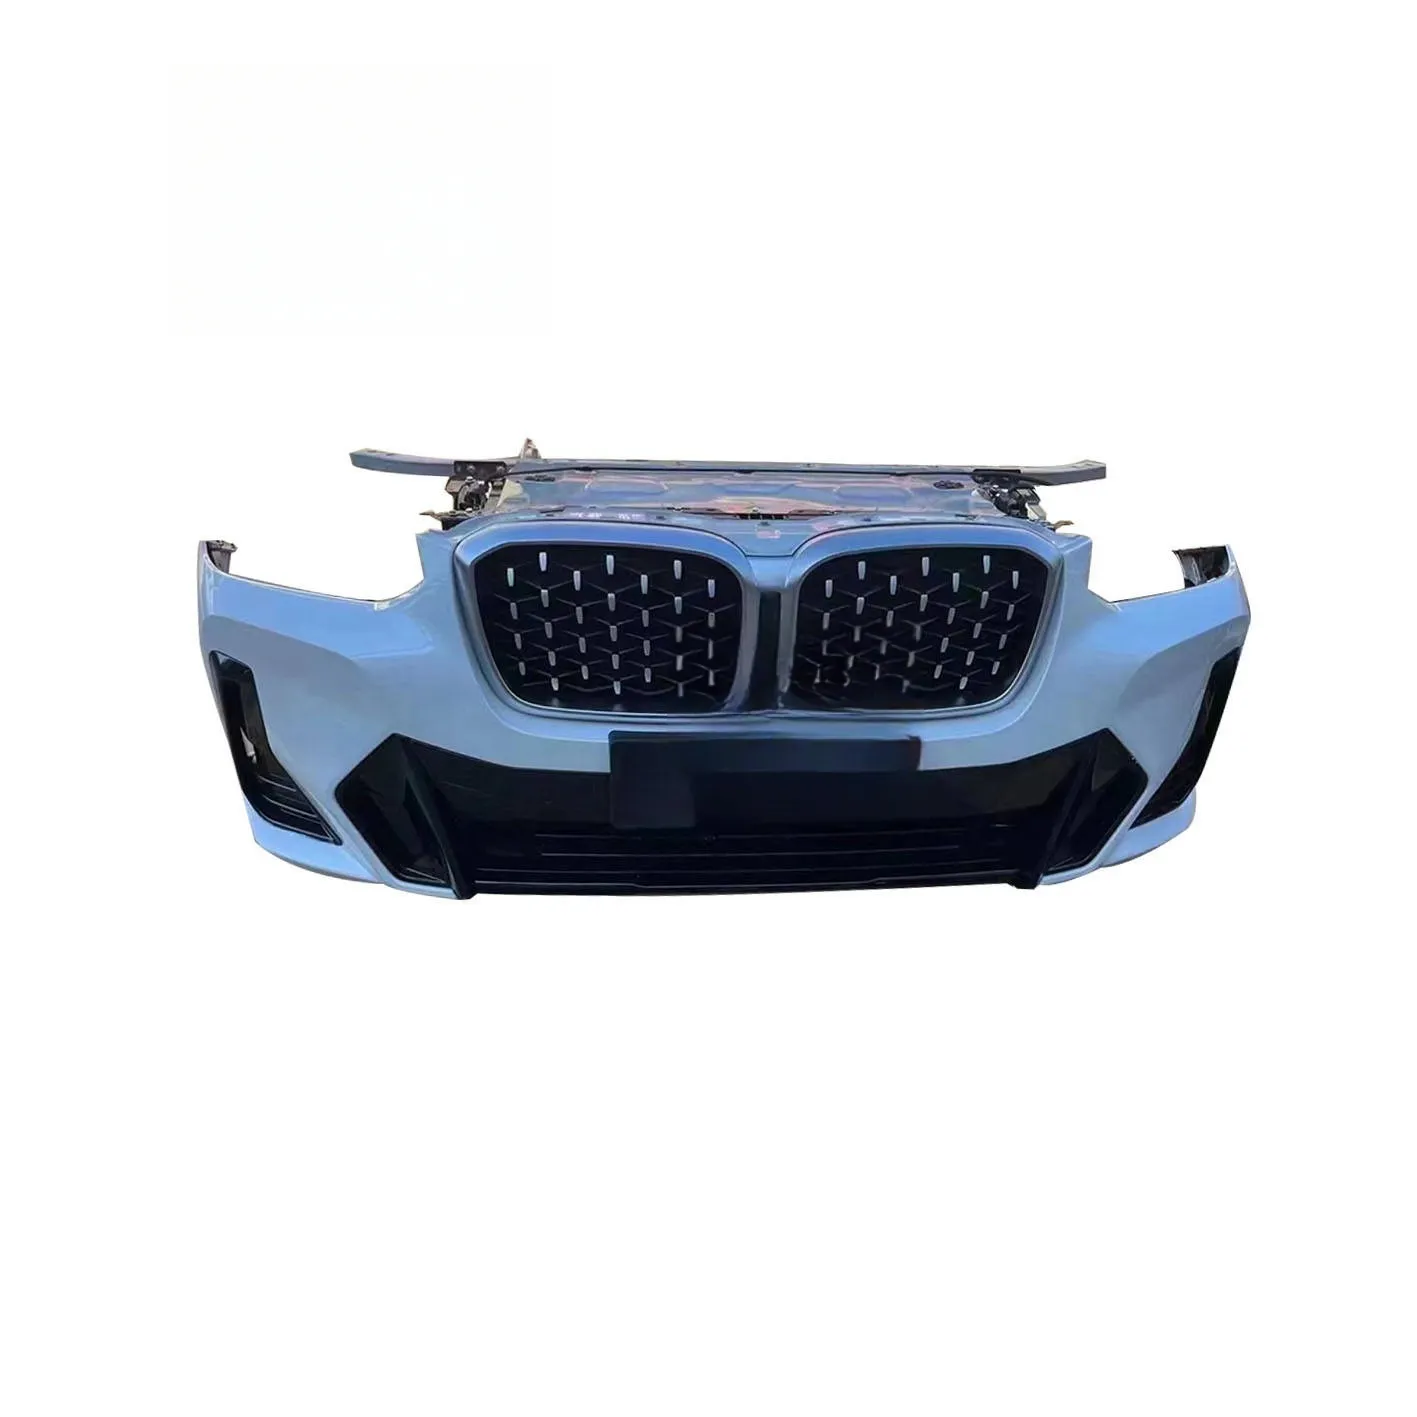 Ventilador eletrônico para BMW X3 G01 G08LCI F25 F97, parede lateral do para-choque dianteiro, ventilador de água, grade dianteira, ideal para